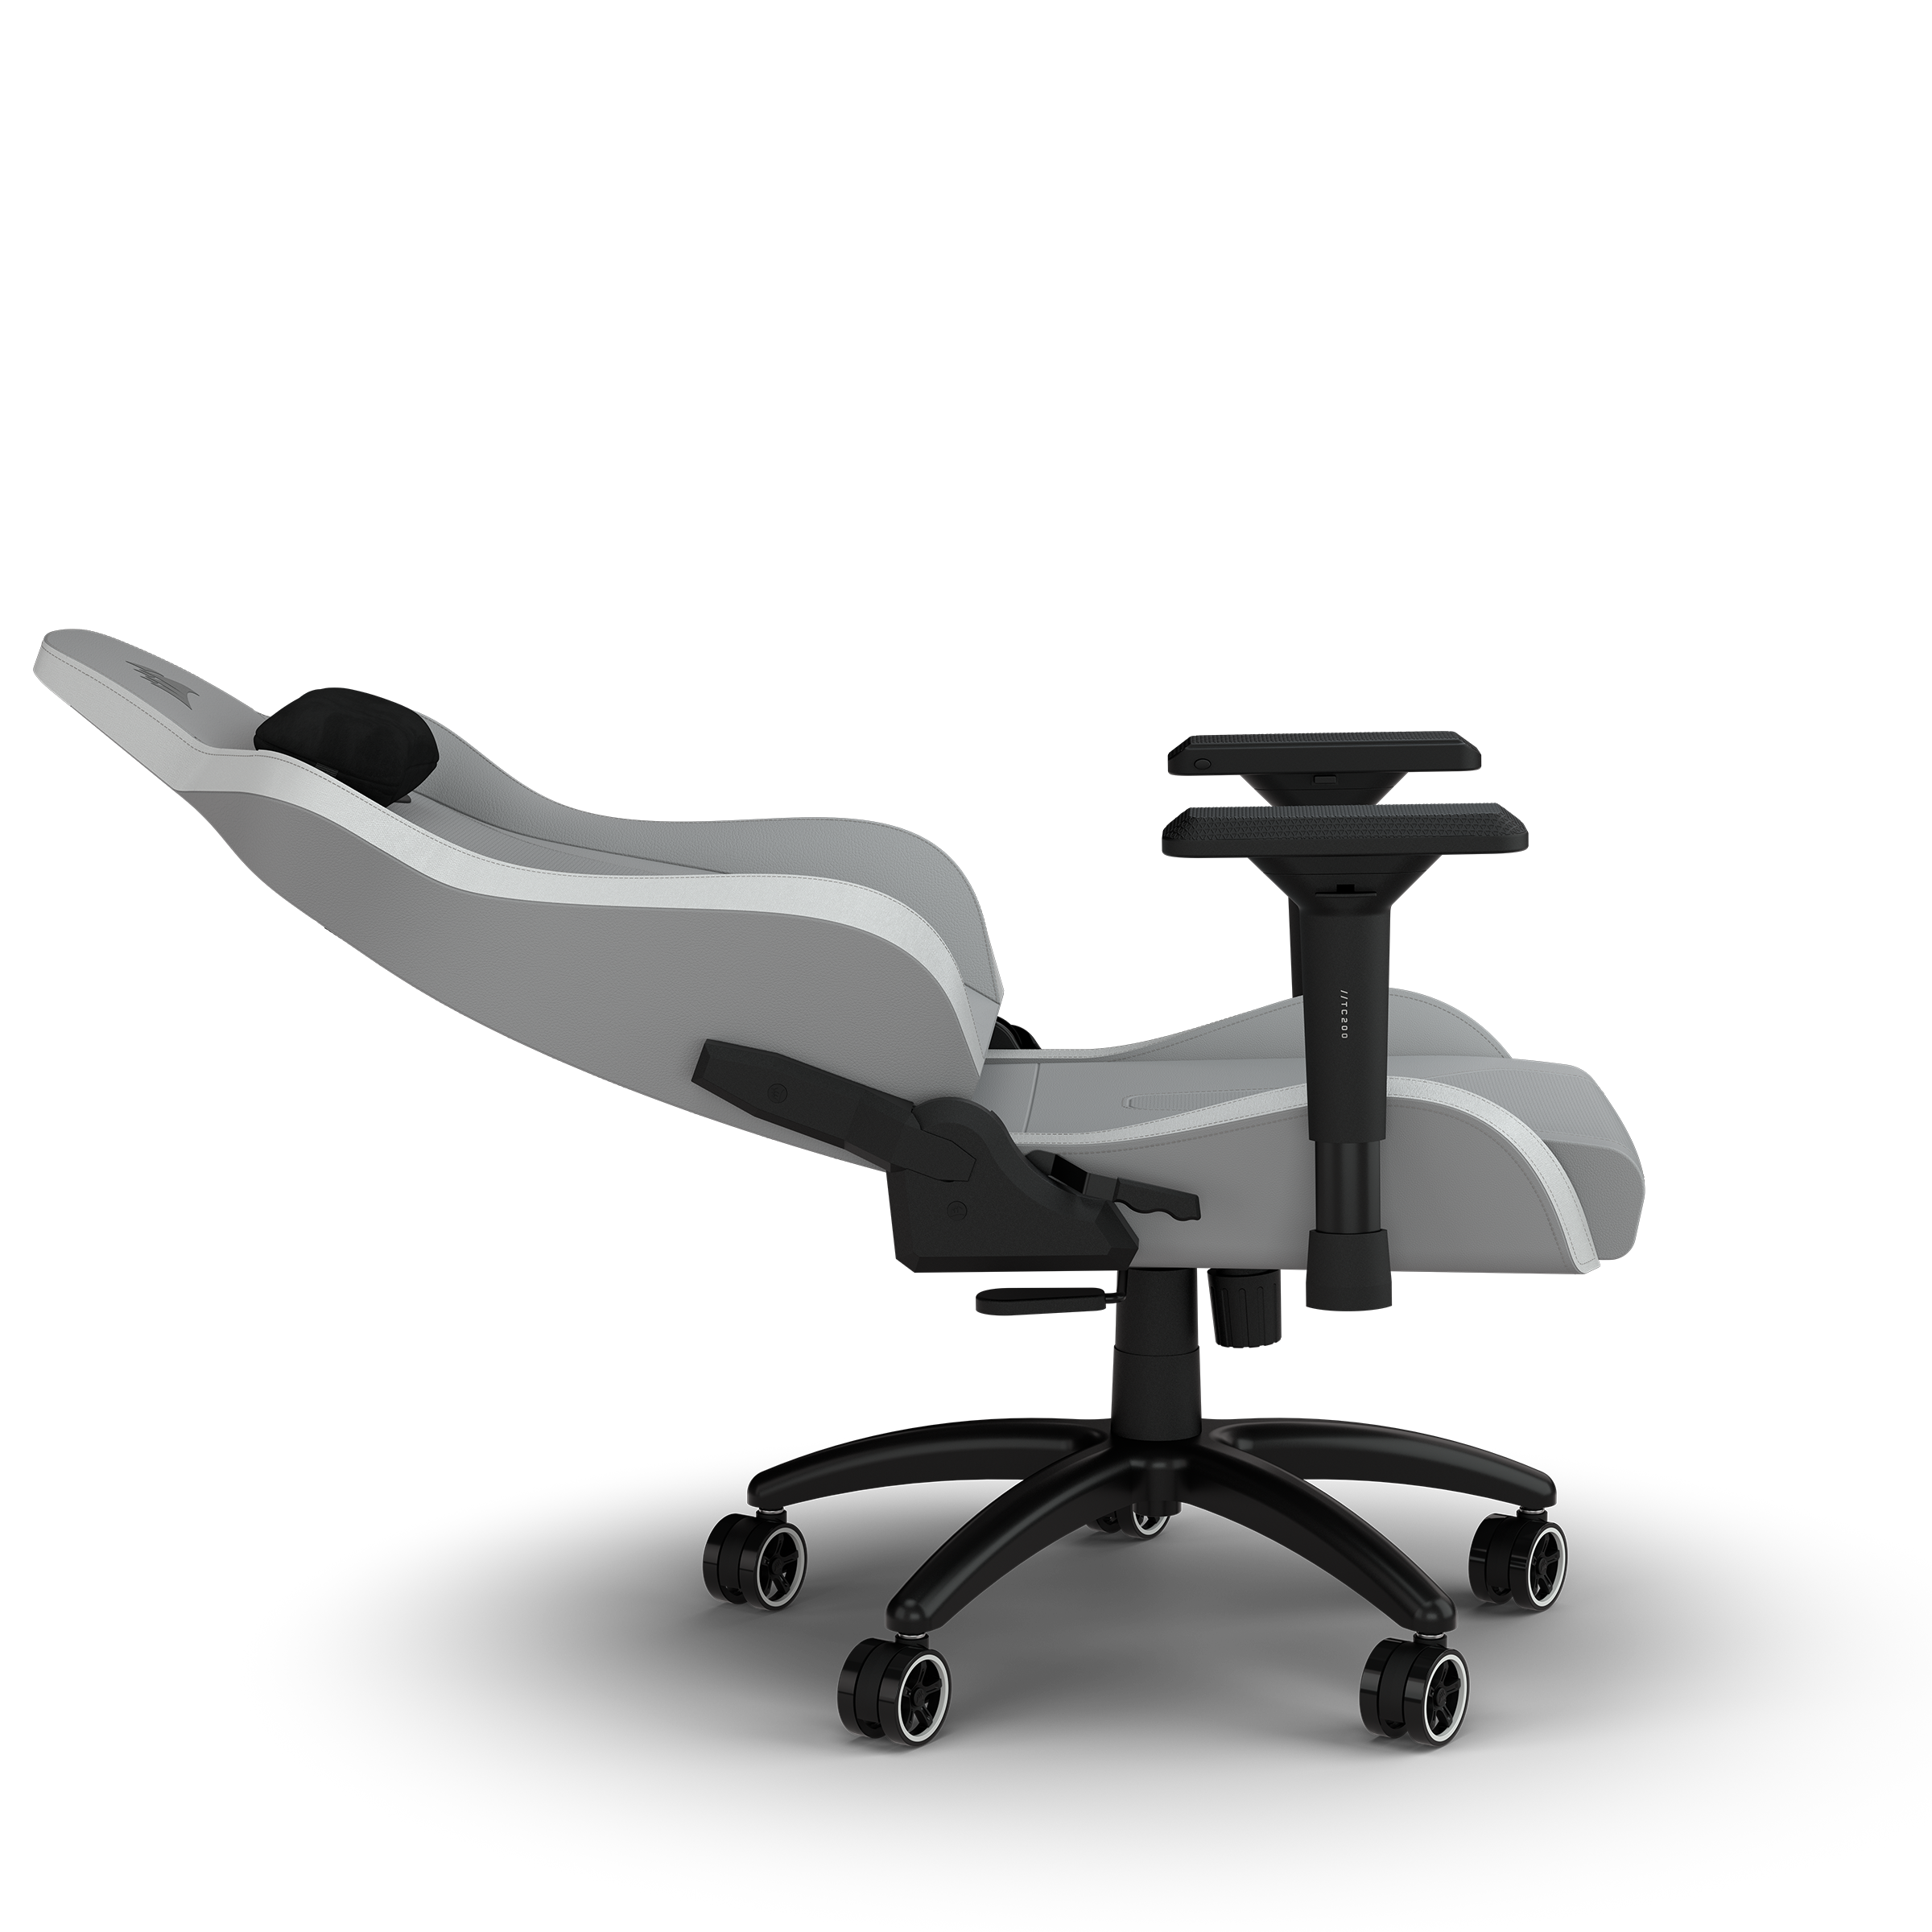 – TC200 Stuhl, CORSAIR Standard Fit, Hellgrau/Weiß Hellgrau/Weiß aus Gaming Kunstleder Gaming-Stuhl